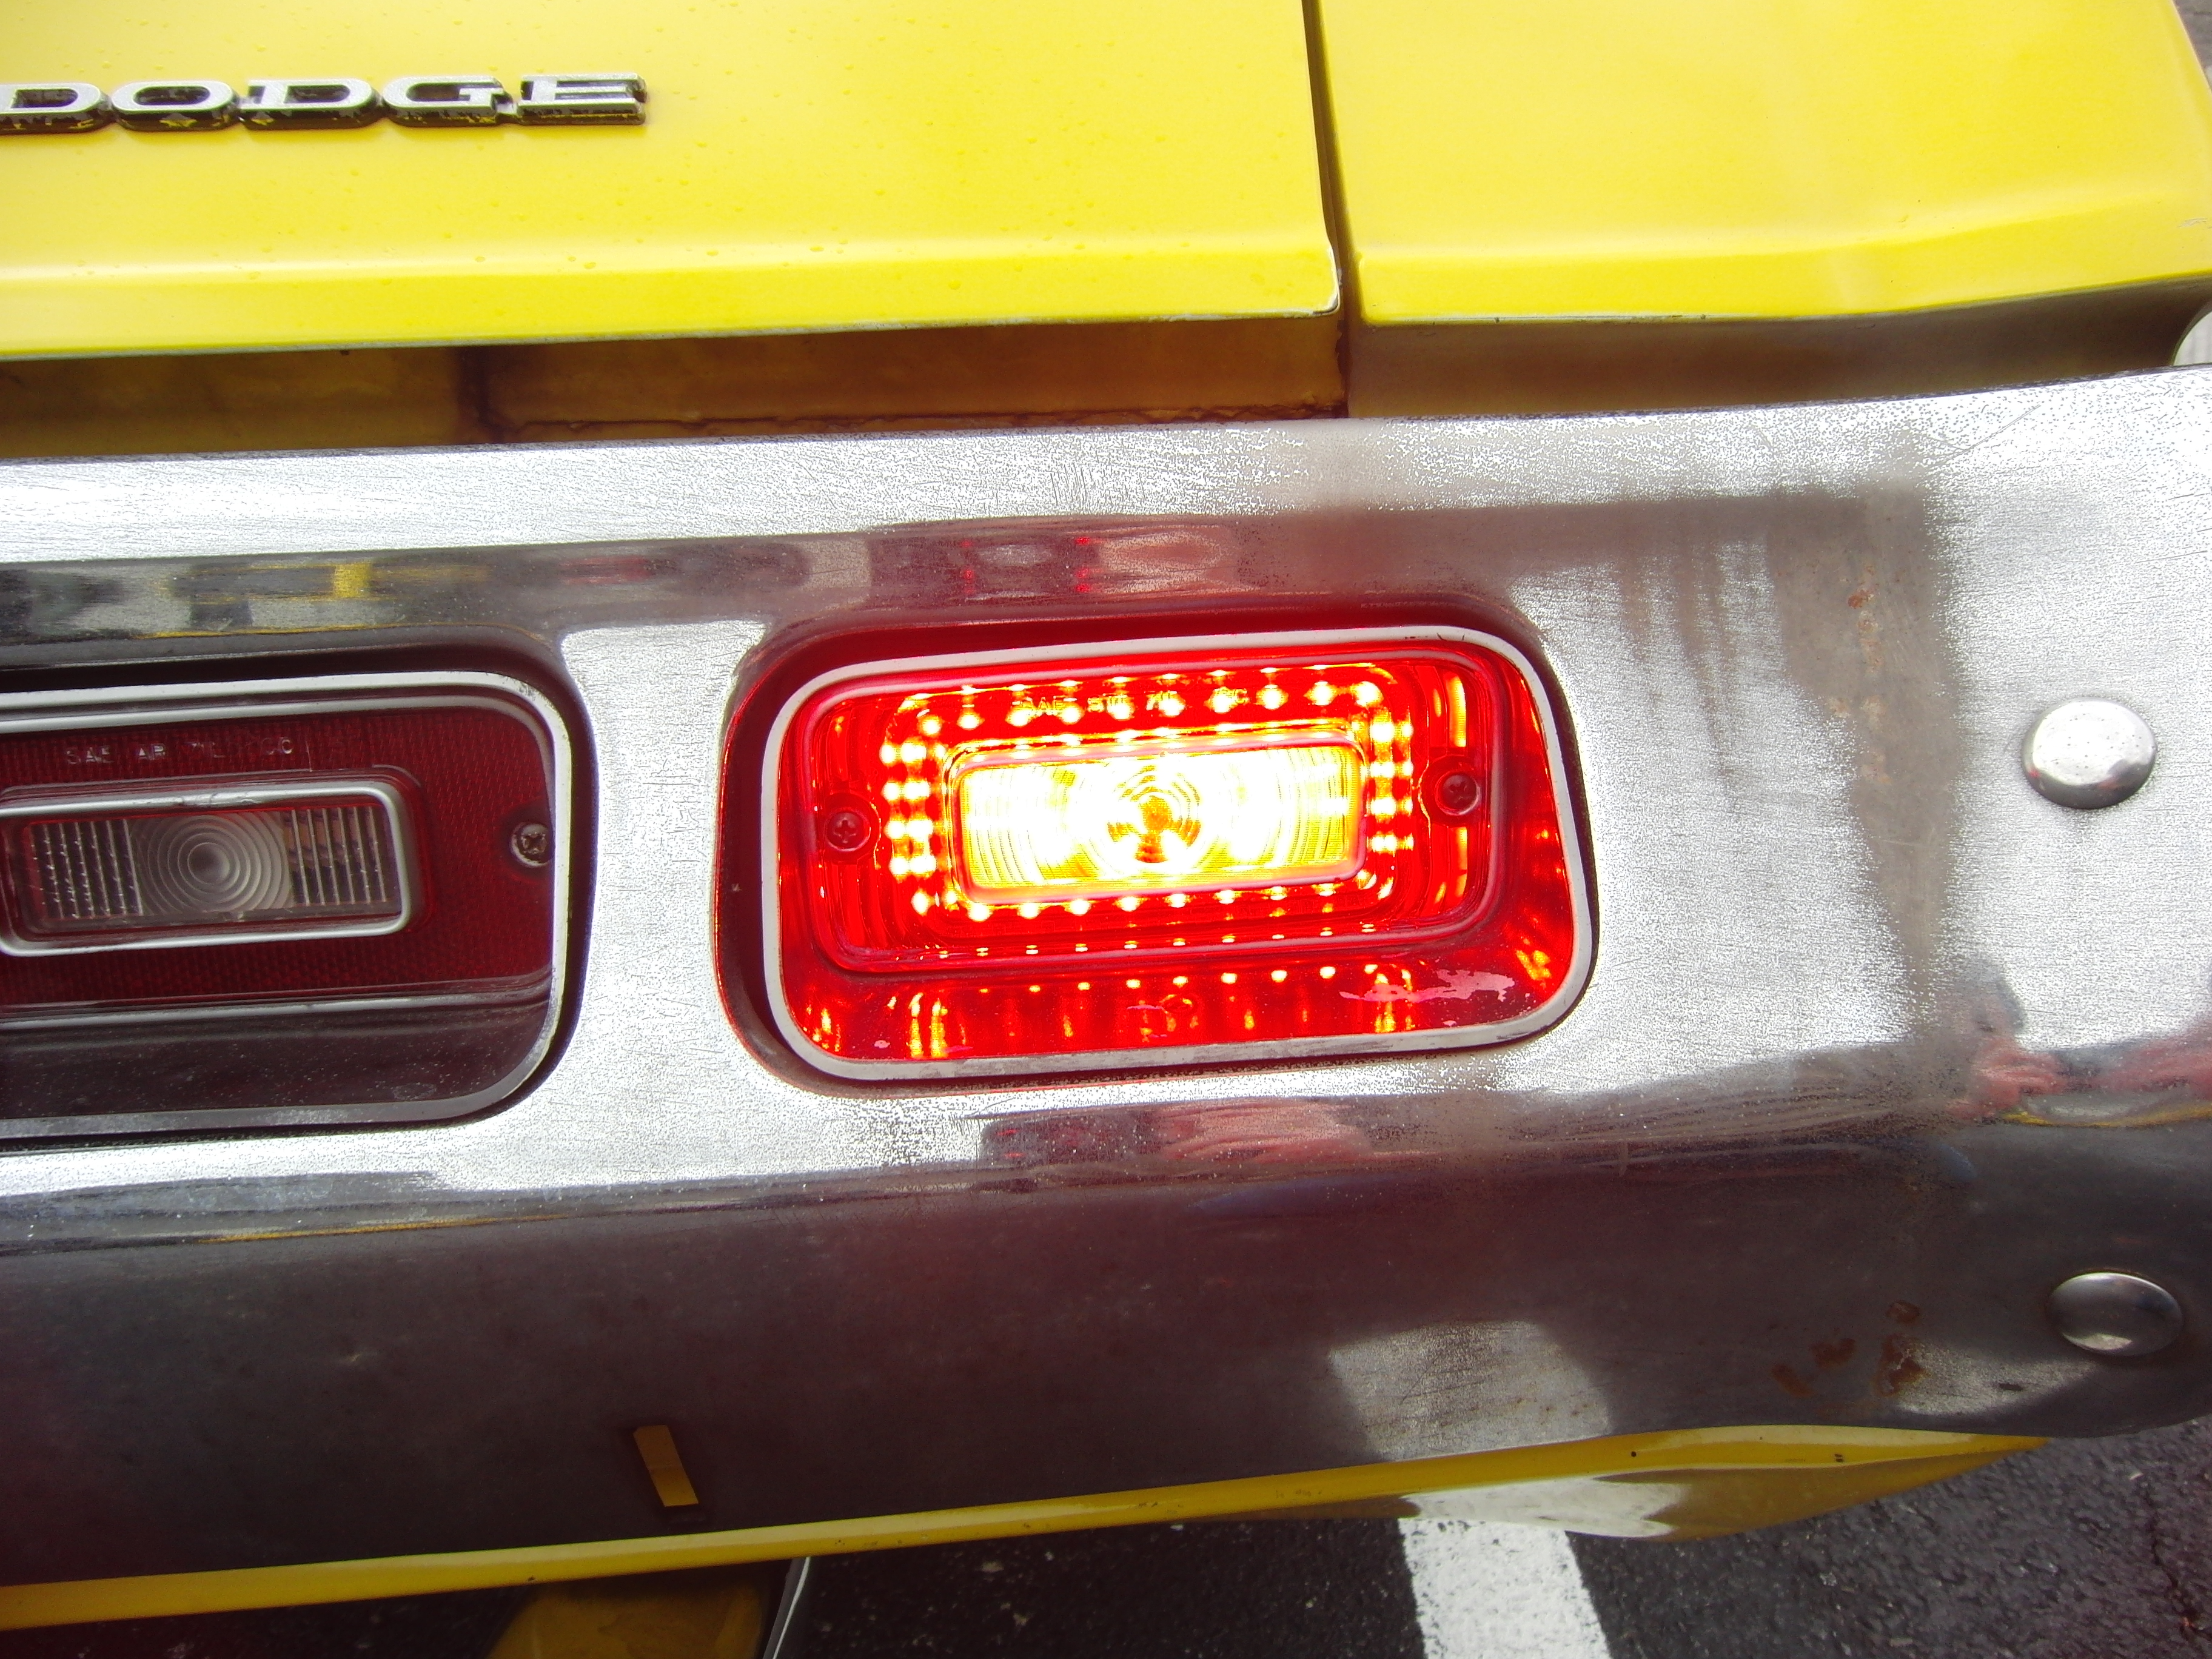 2013 Chevy Silverado LED Tail Light